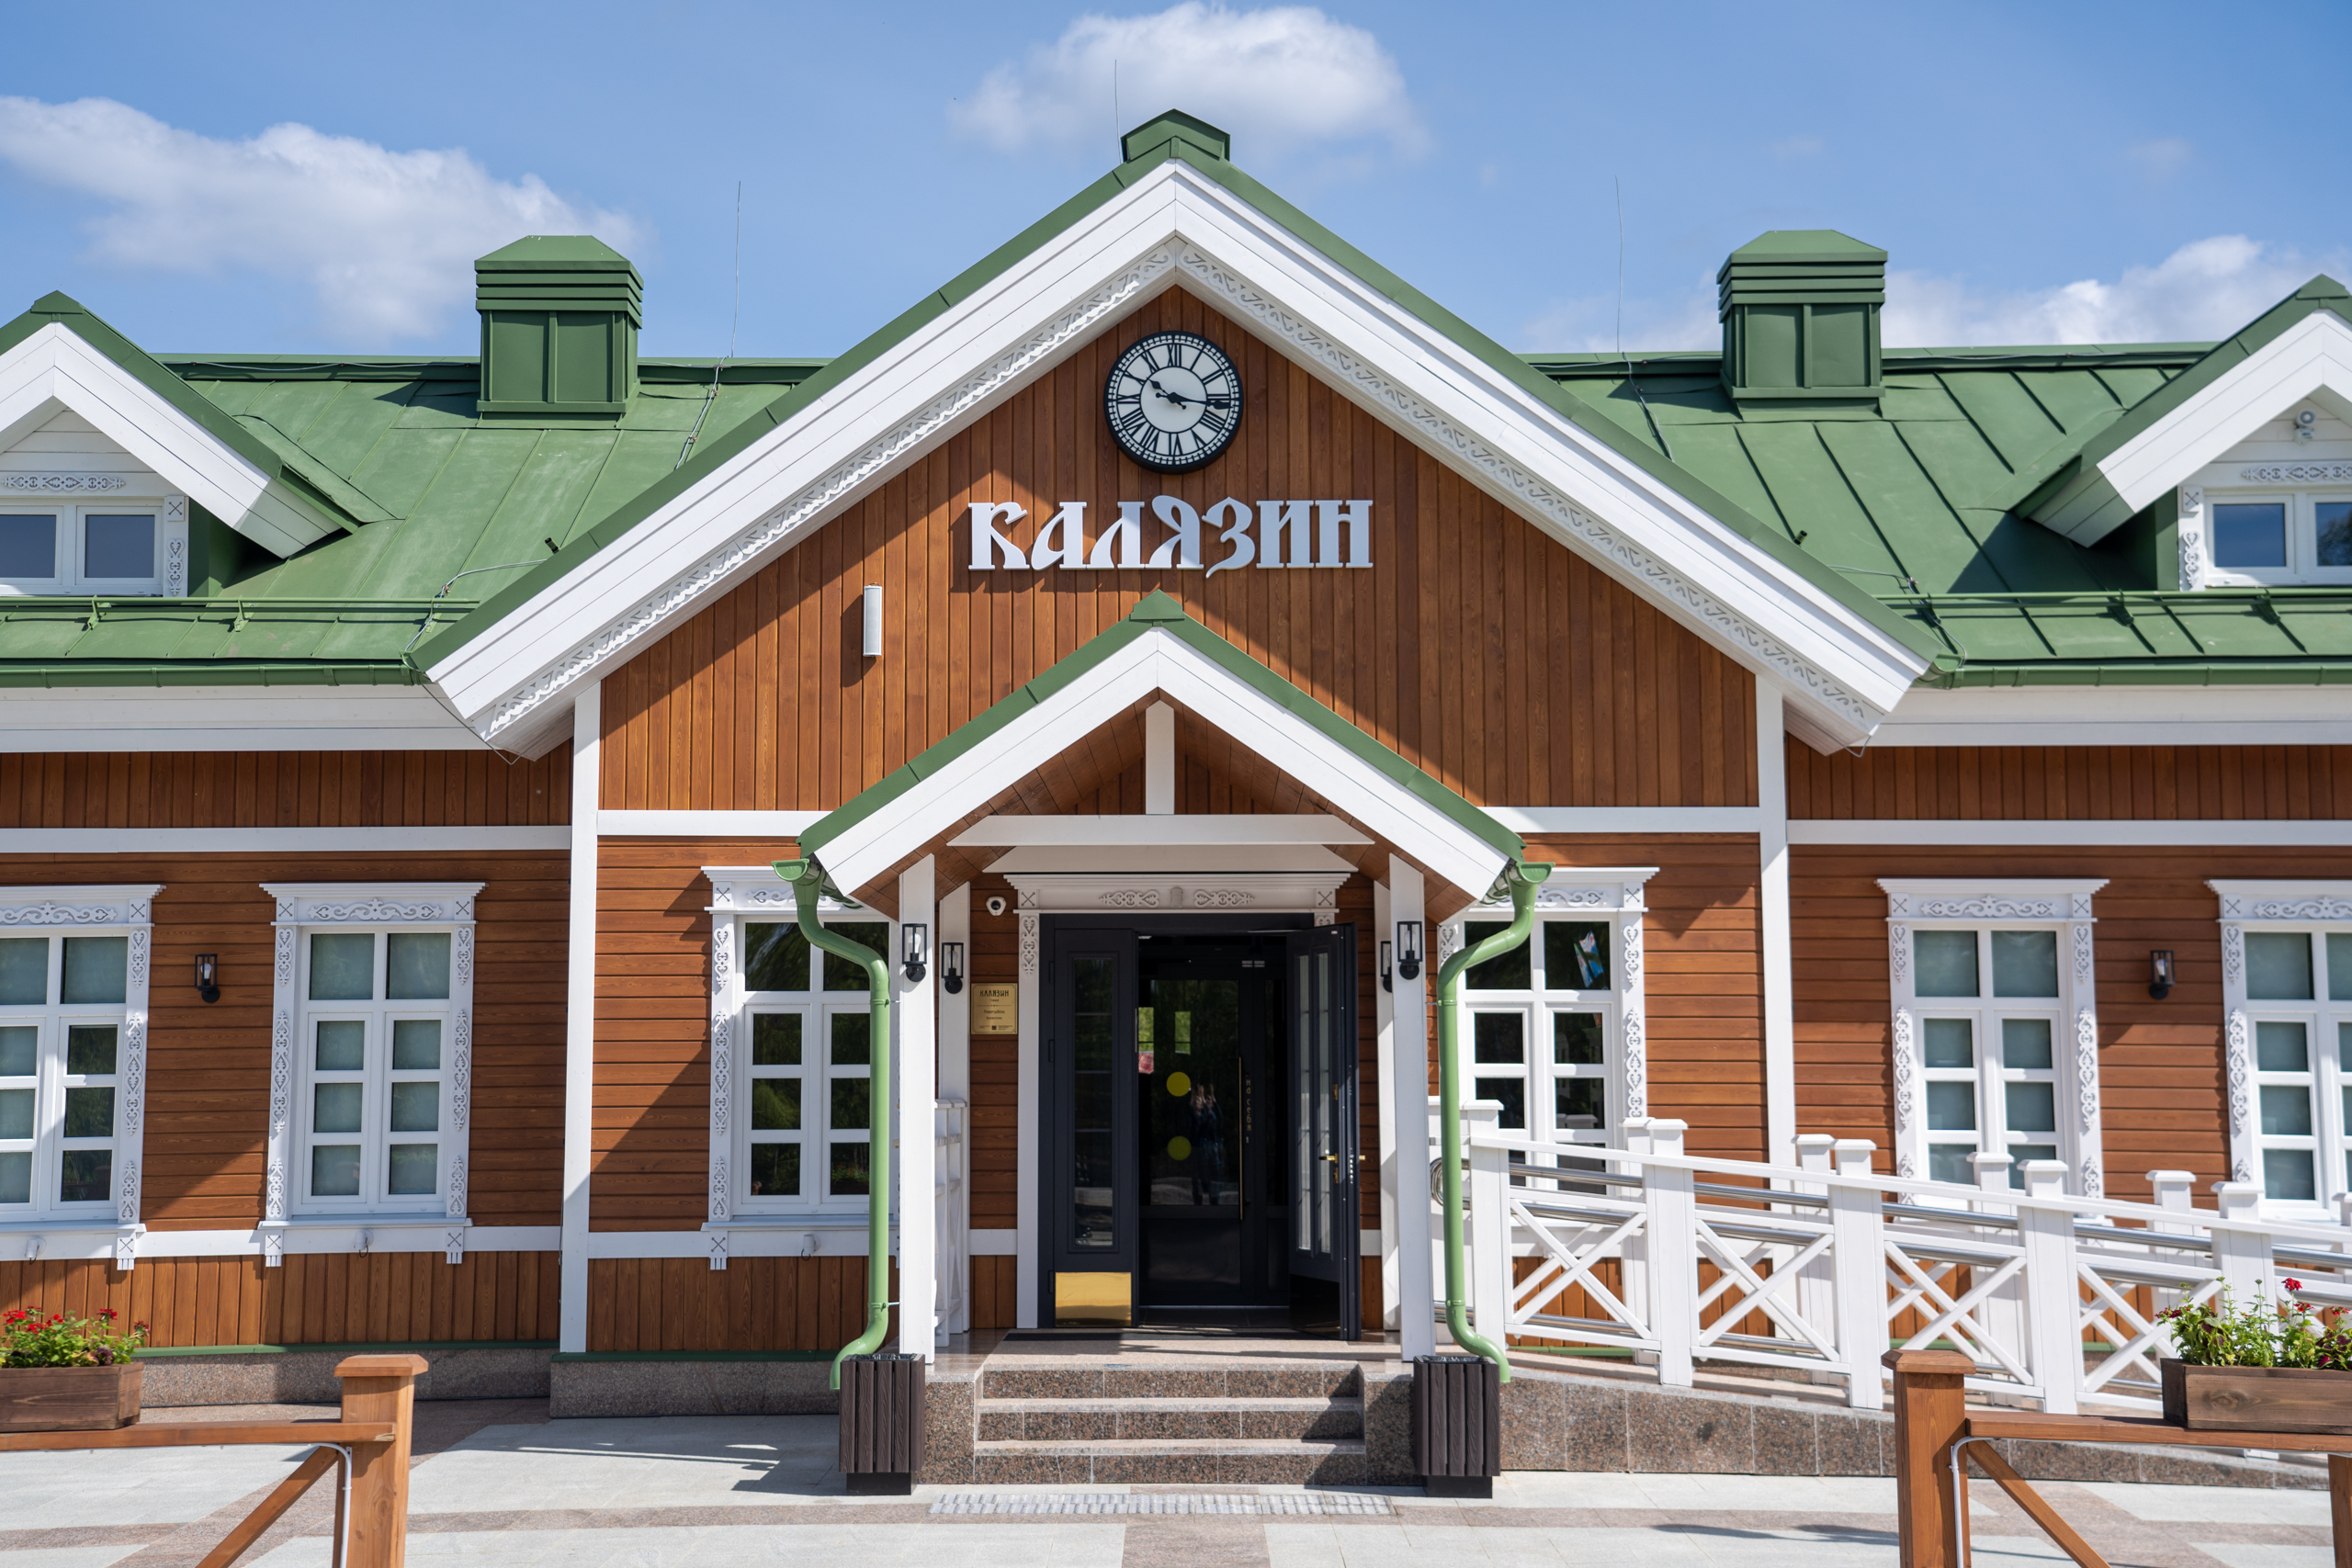 Блогер показал новое здание железнодорожного вокзала в Калязине